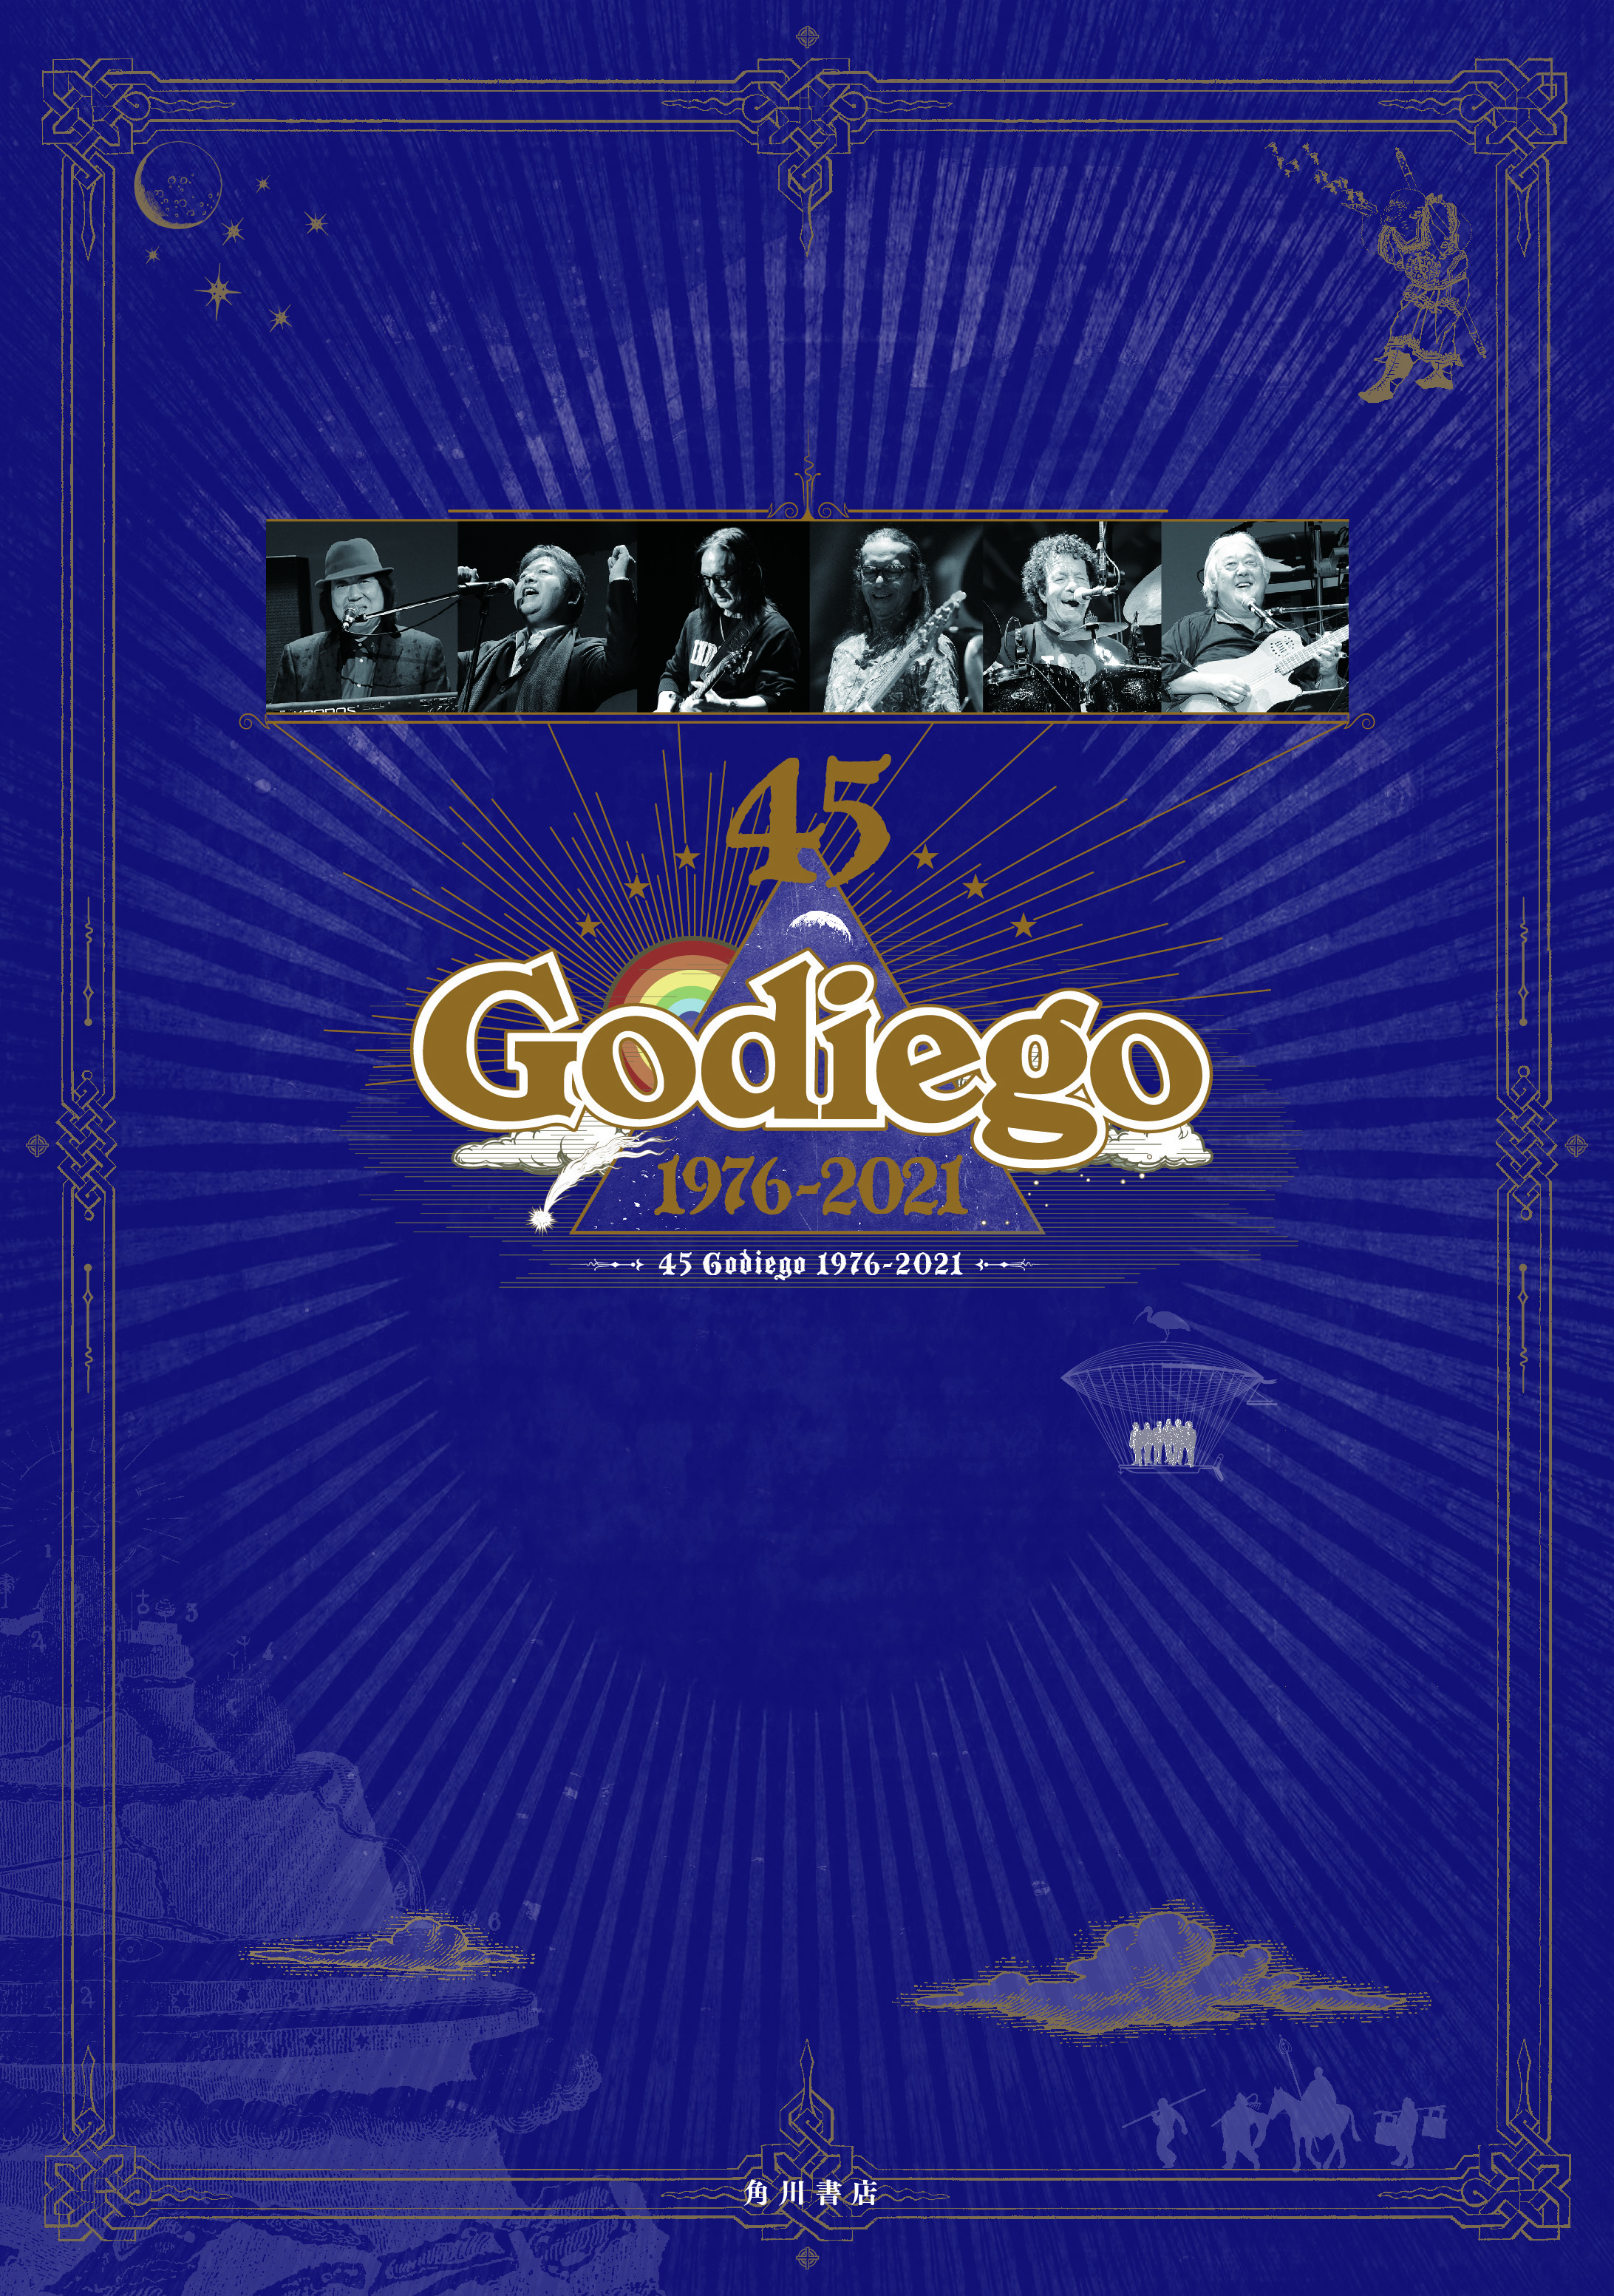 ゴダイゴ 45 Godiego 1976-2021 ハードカバーブック 特典トートバックつき Godiego Anniversary Project